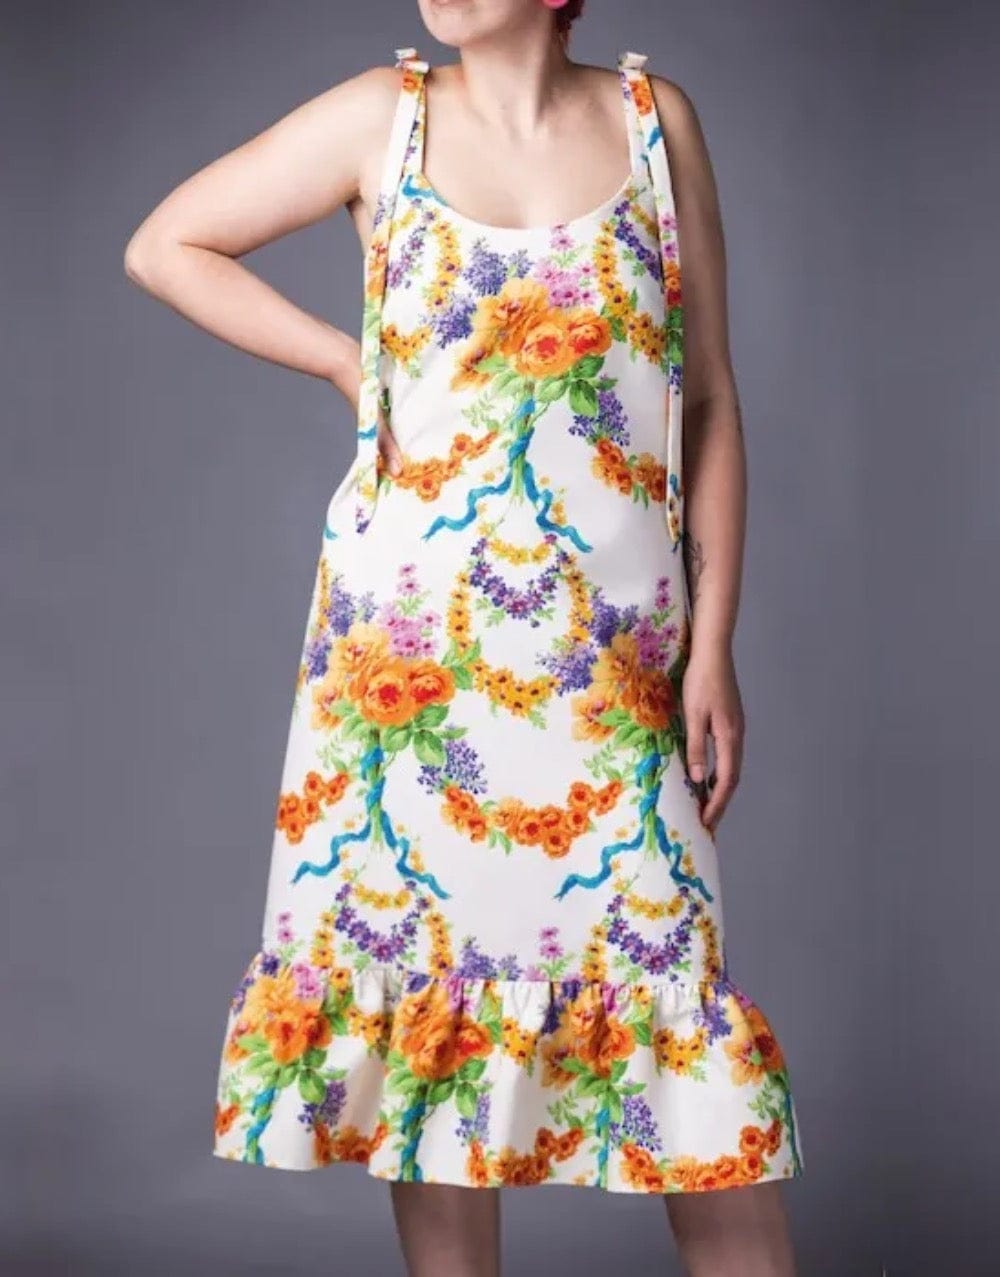 The Joy Dress Sewing Pattern, Maven Patterns – Clothkits